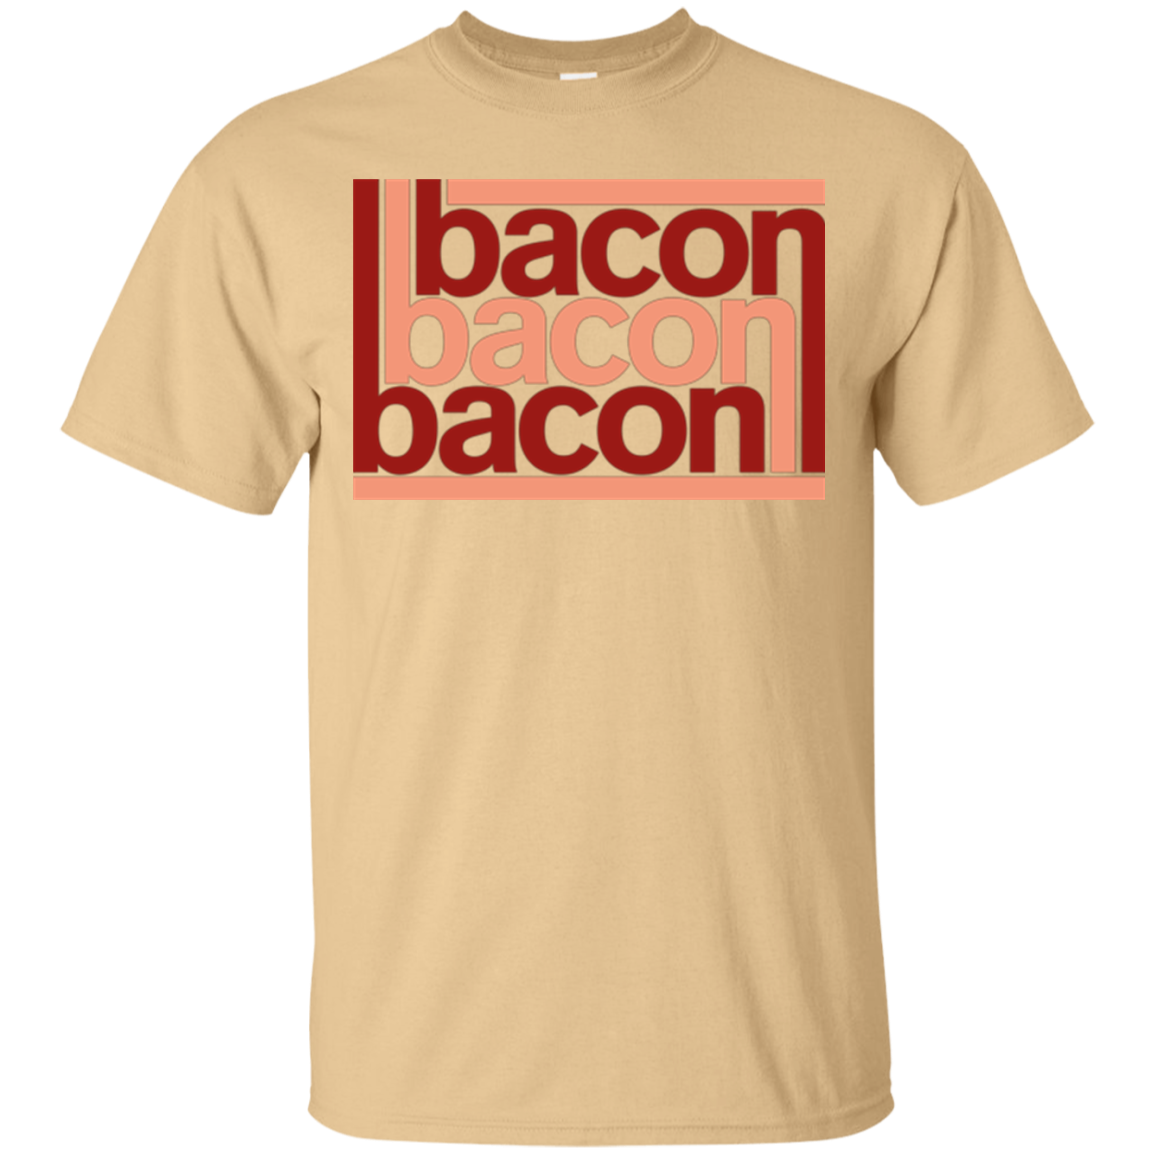 Bacon-Bacon-Bacon T-Shirt